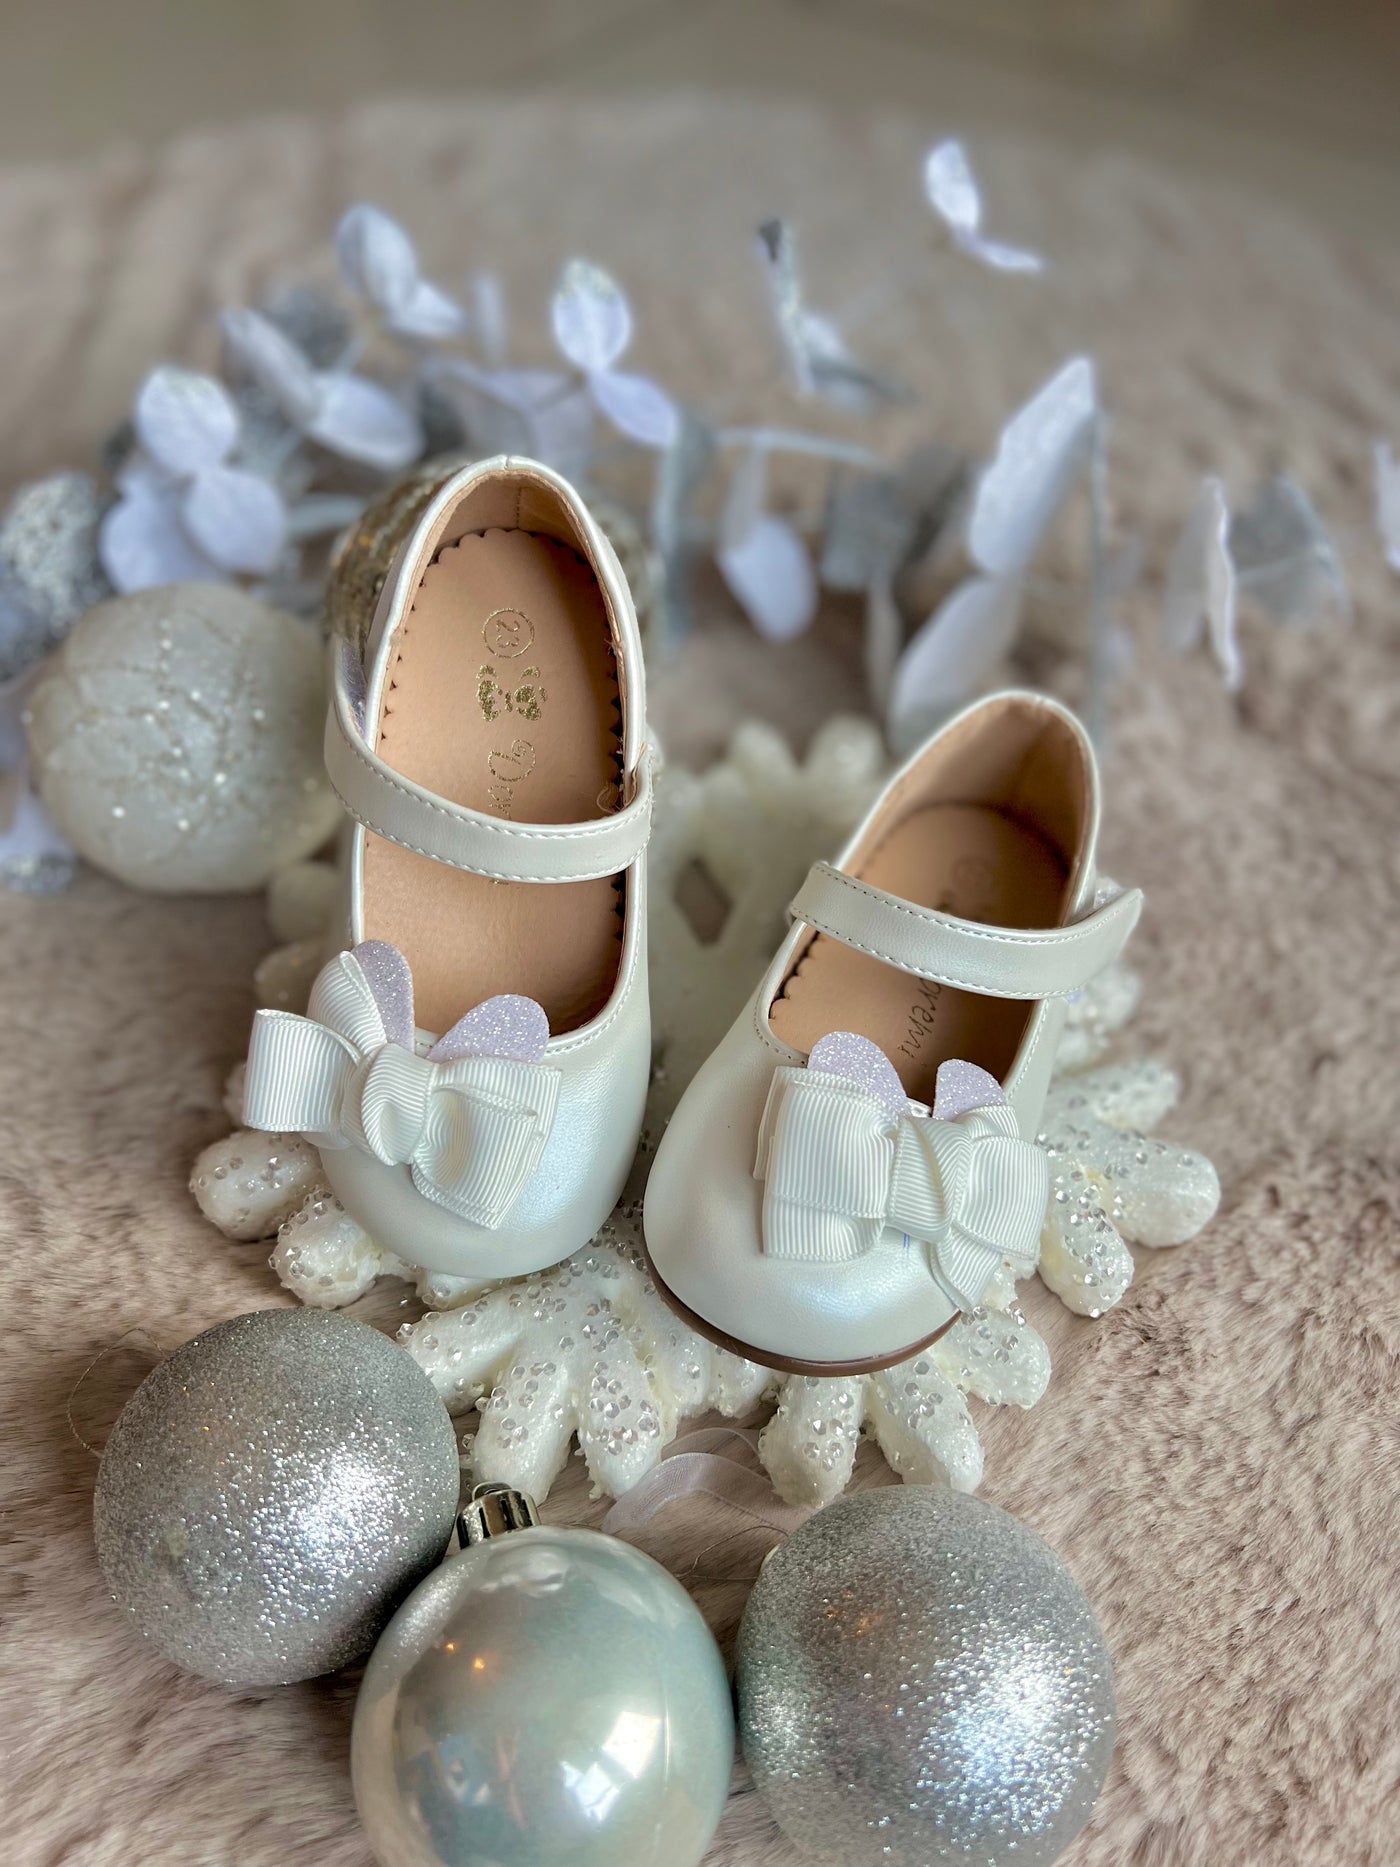 Chaussures cérémonie mariage bapteme bébé fille